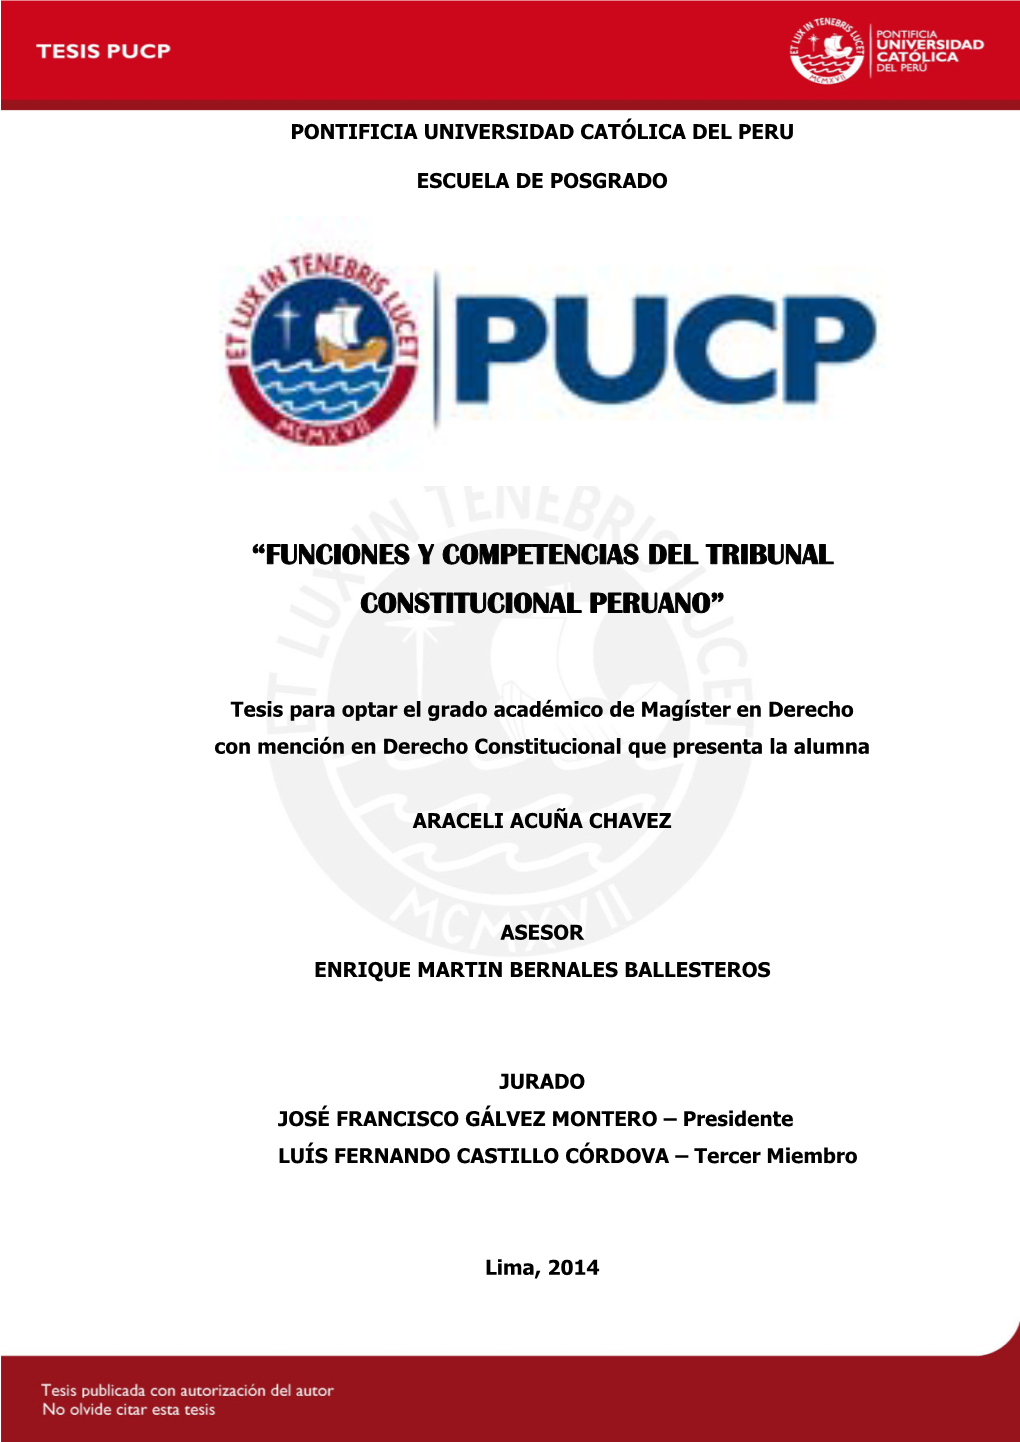 Funciones Y Competencias Del Tribunal Constitucional Peruano”